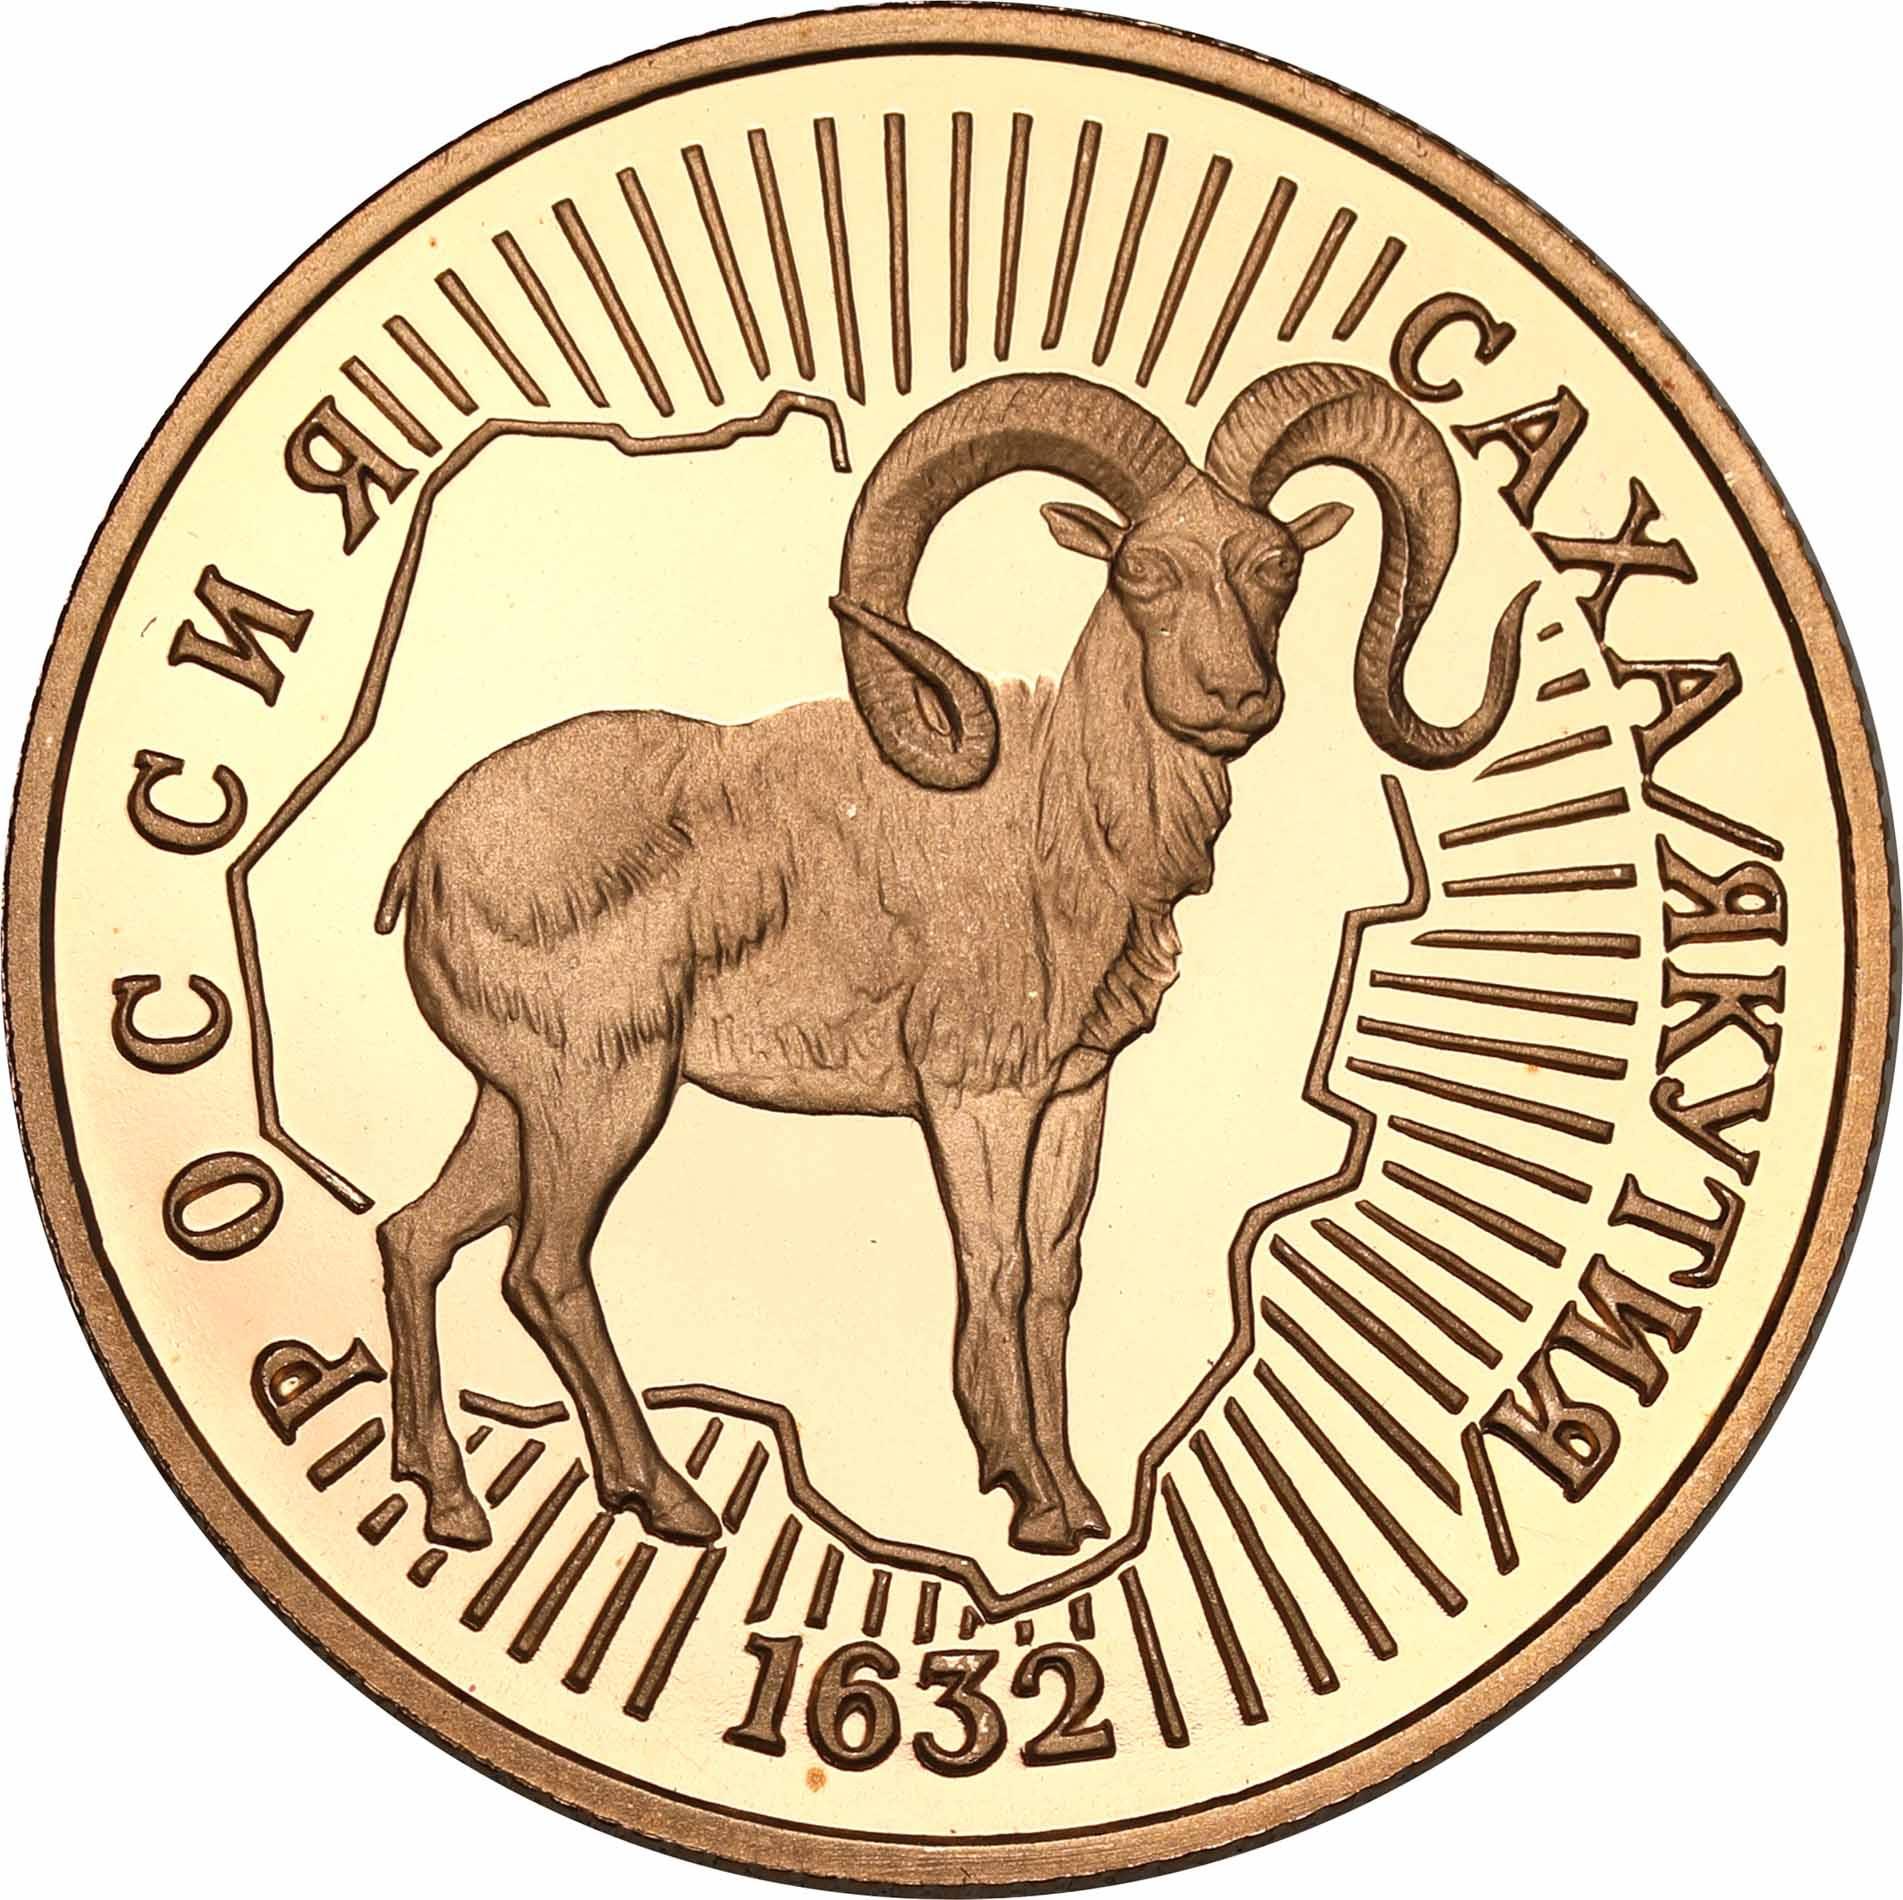 Rosja. 50 Rubli 1992 znak zodiaku Koziorożec - 1/4 uncji złota